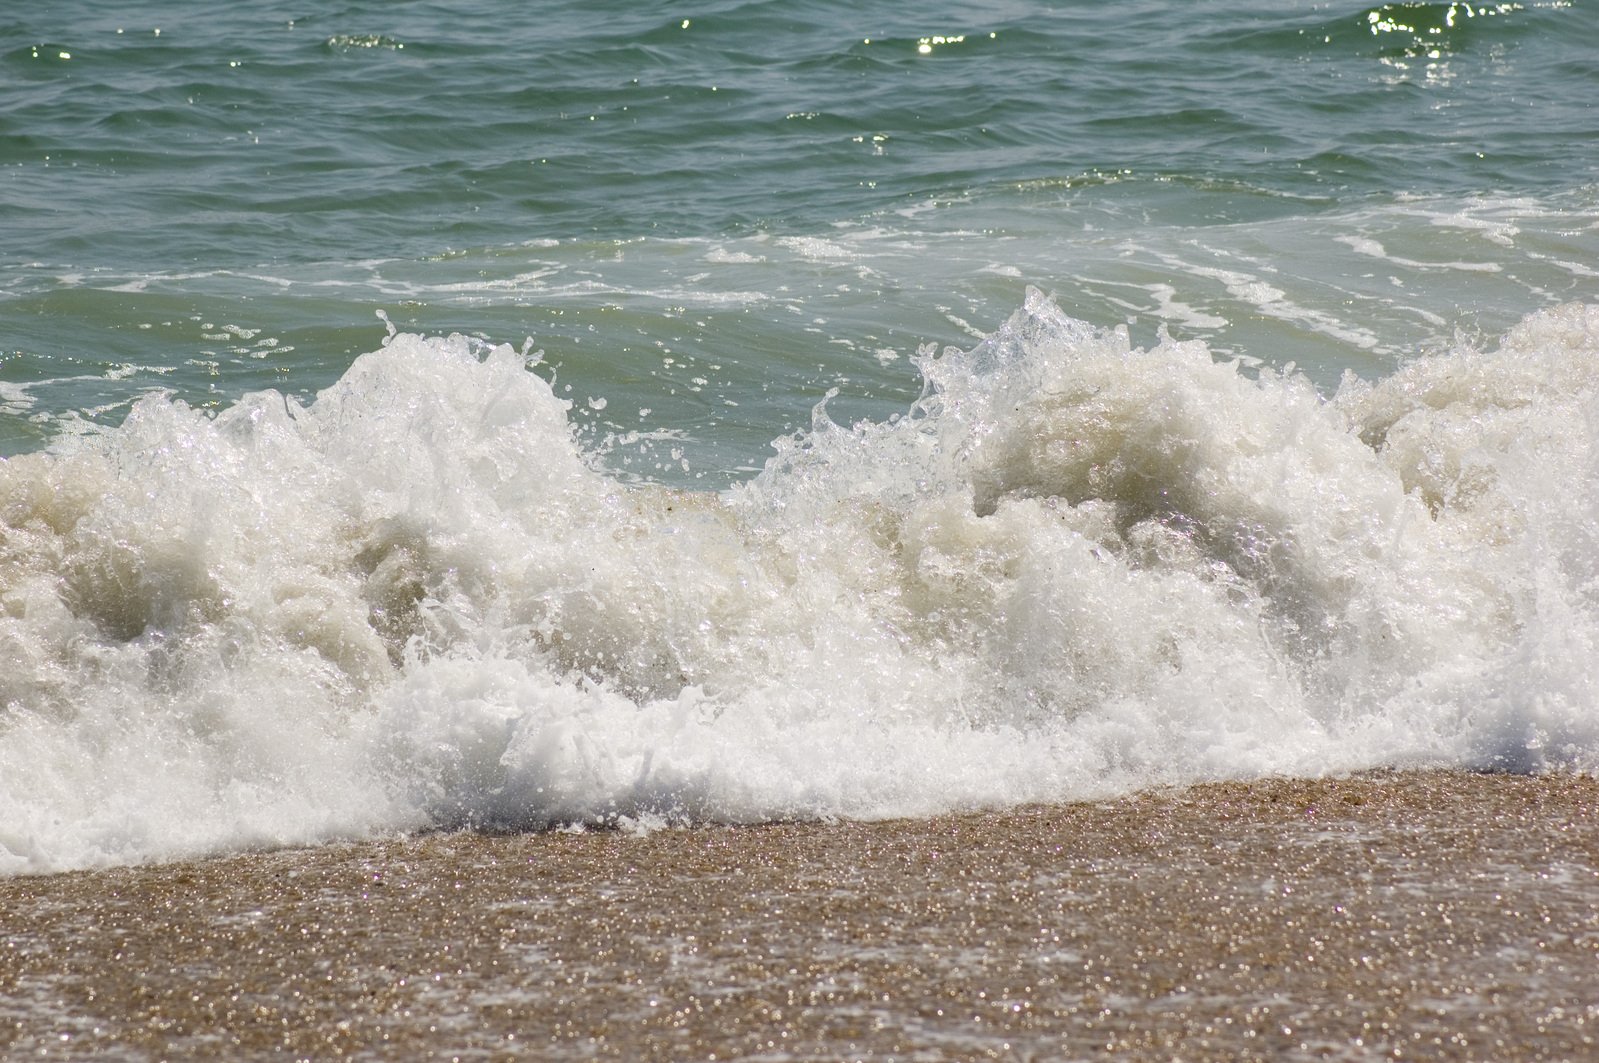 the ocean waves crash into shore near the beach